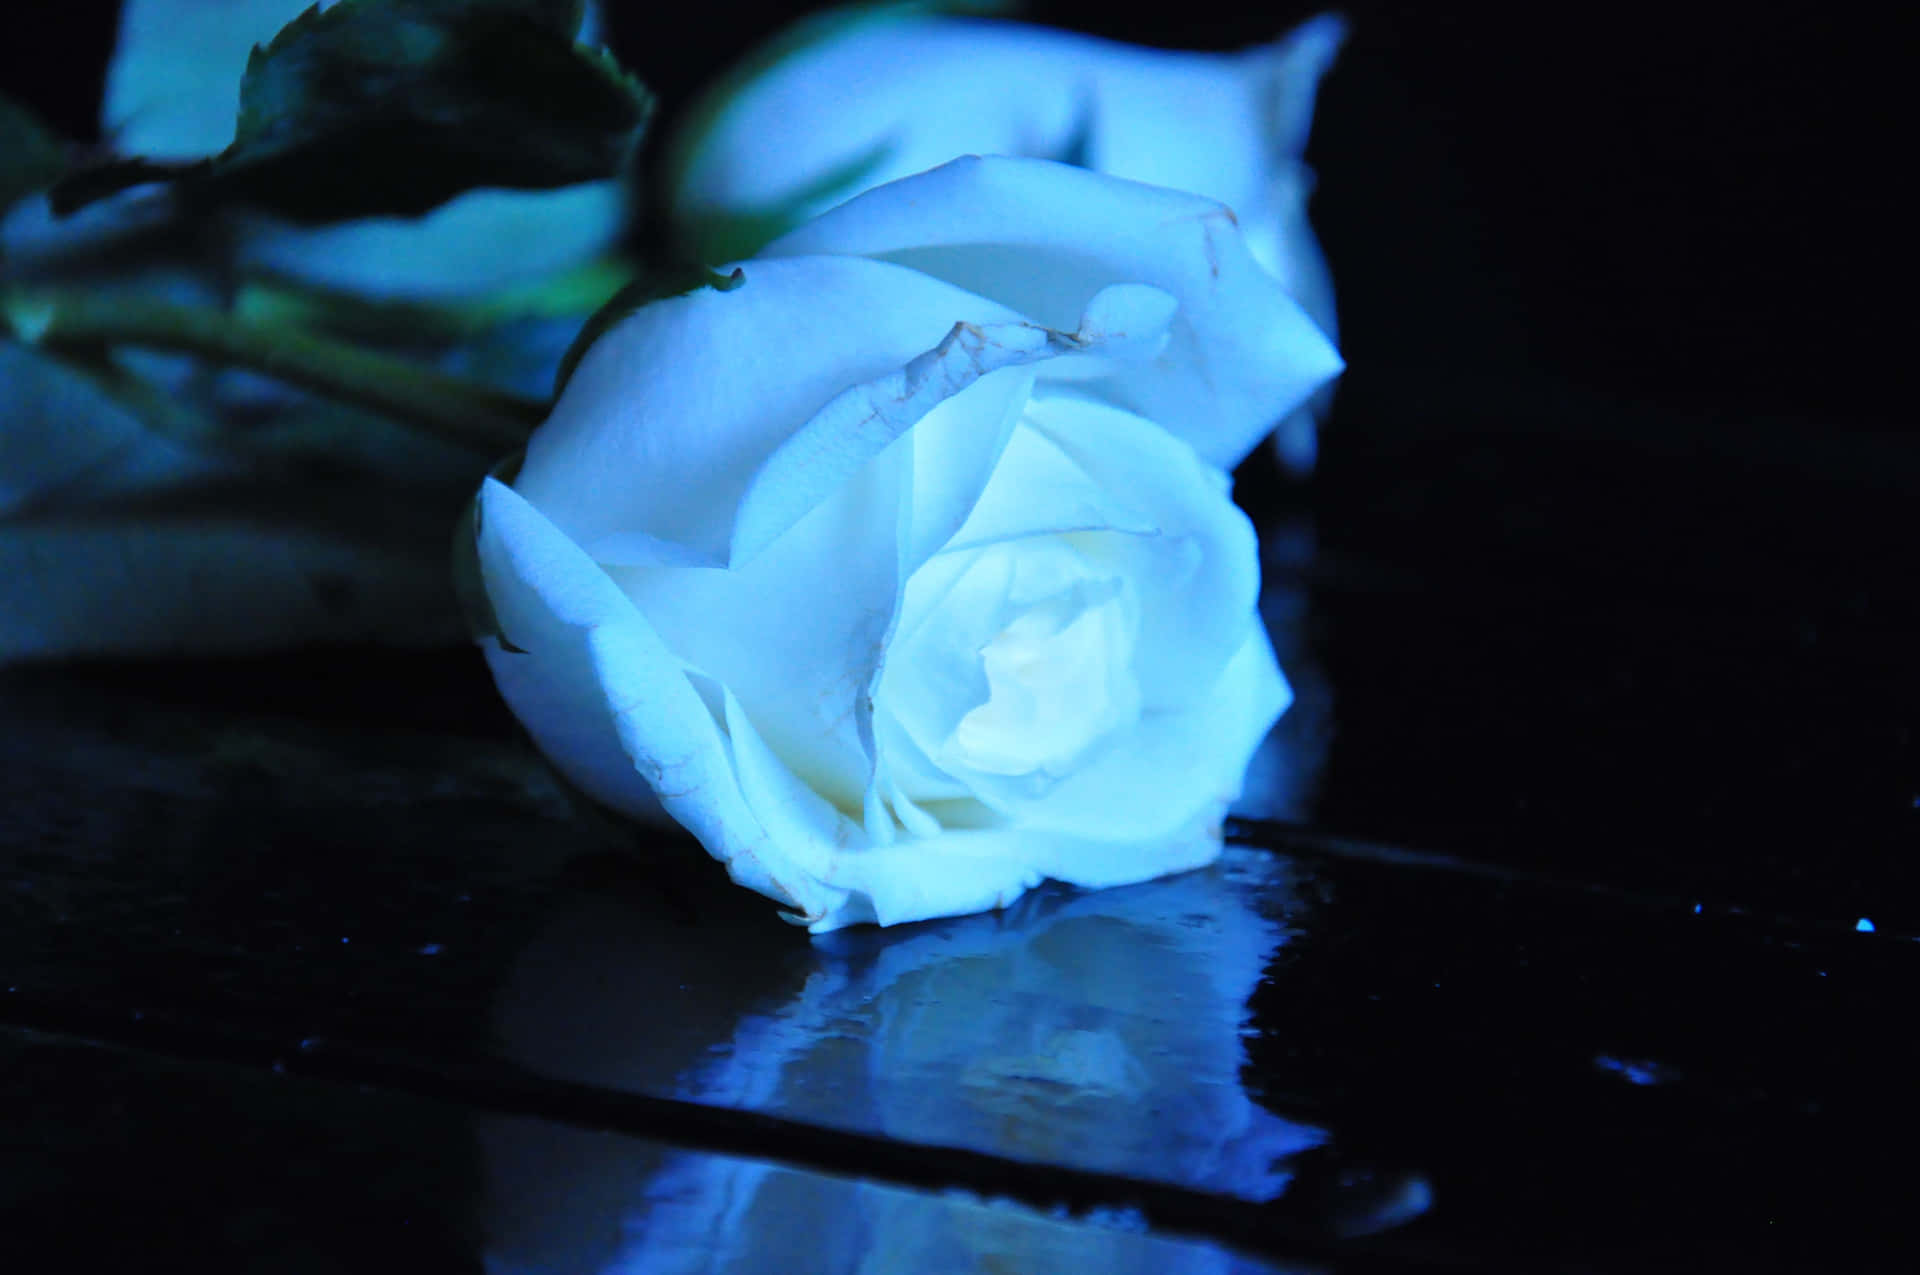 Imagende Una Rosa Blanca Con Reflejo Azul